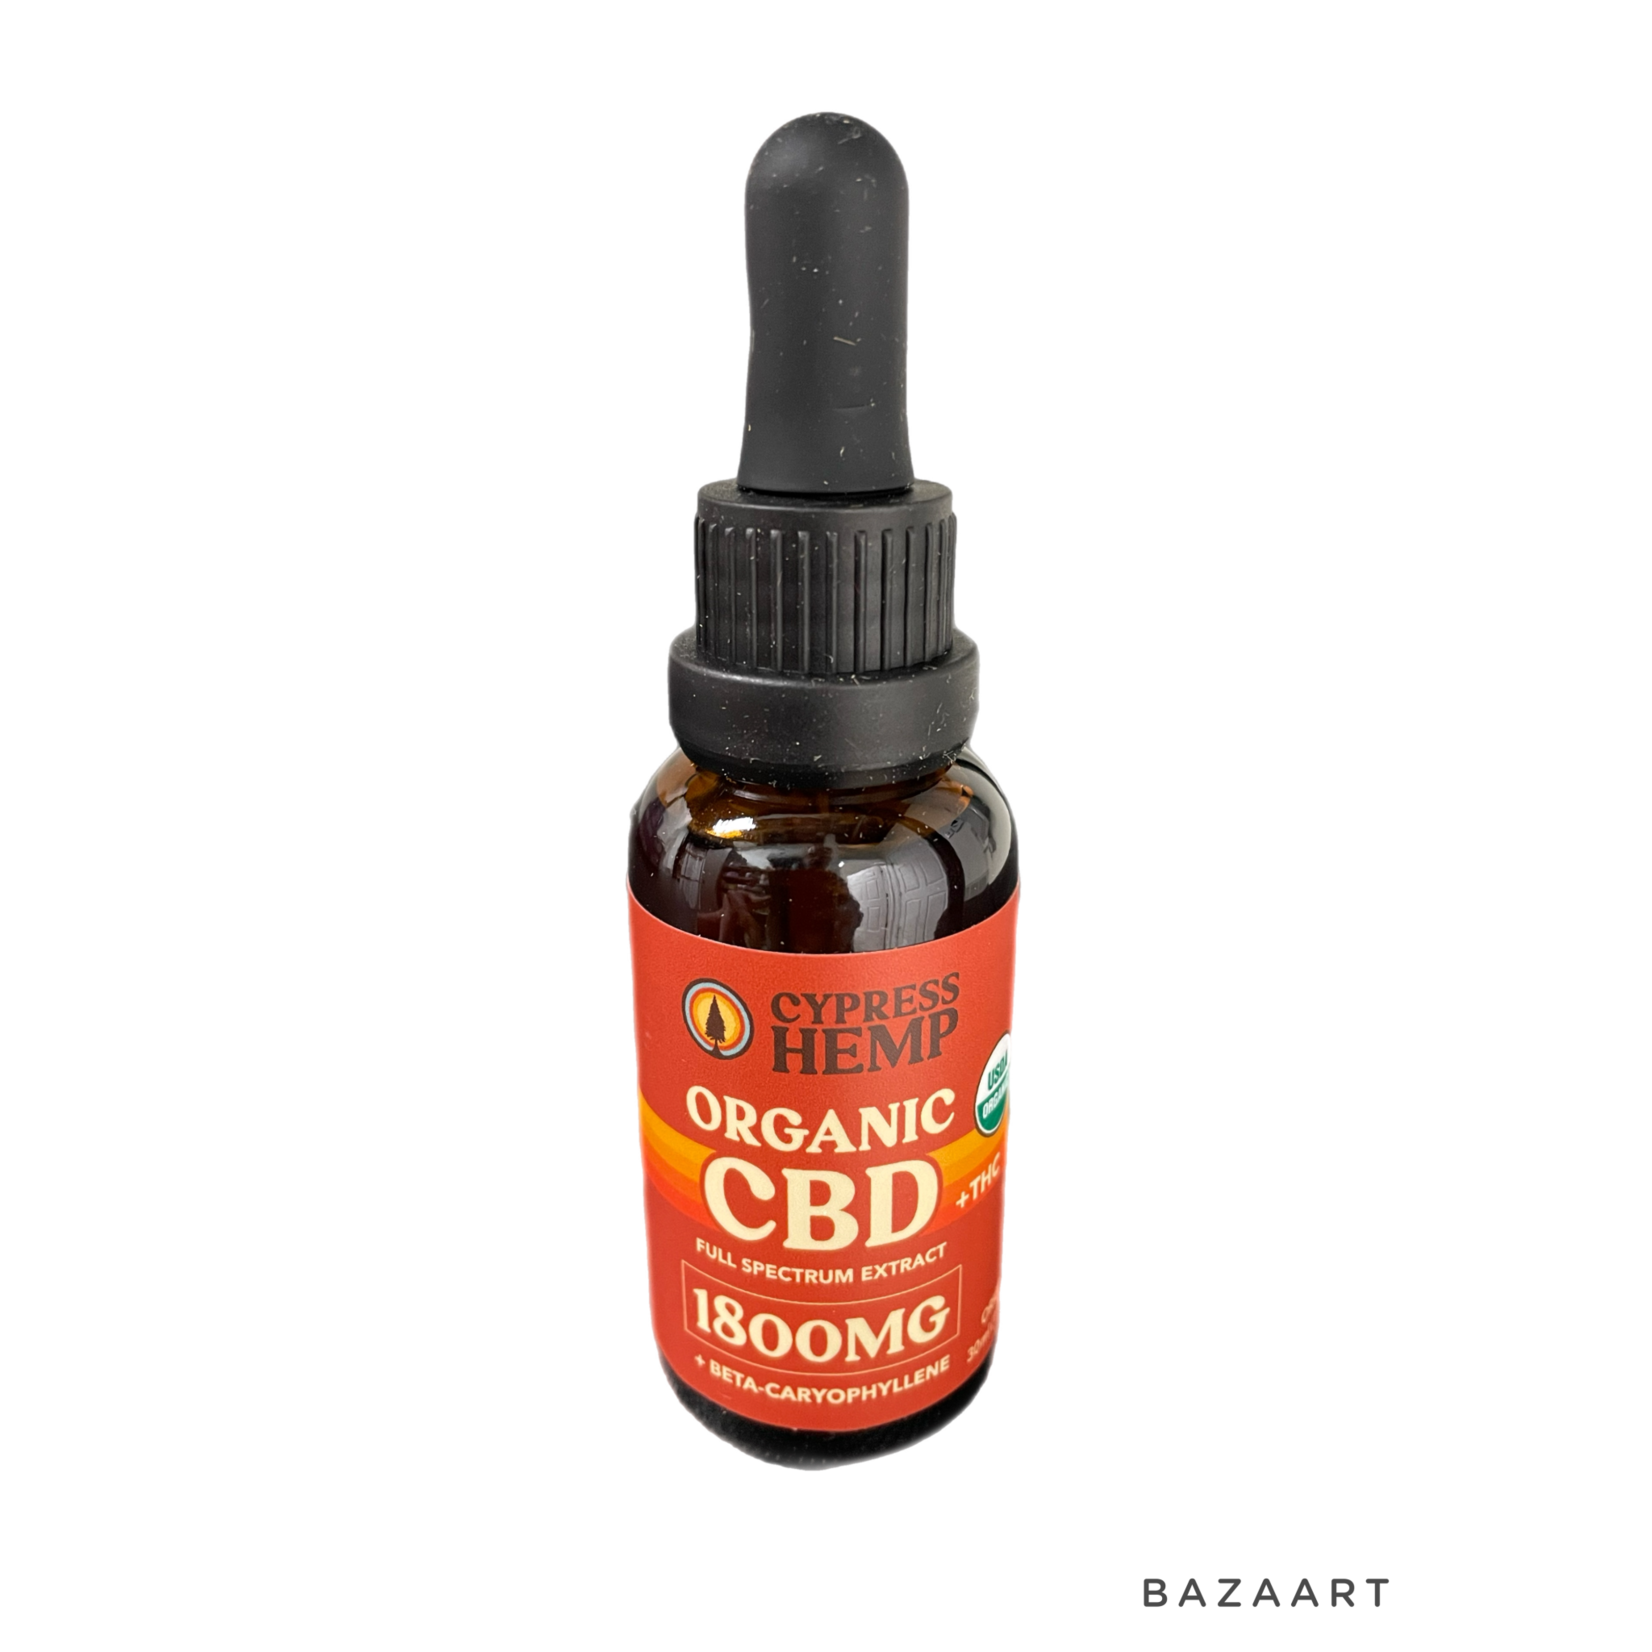 Cypress Hemp Cypress Hemp USDA Organic CBD Oil + BCP 30ml